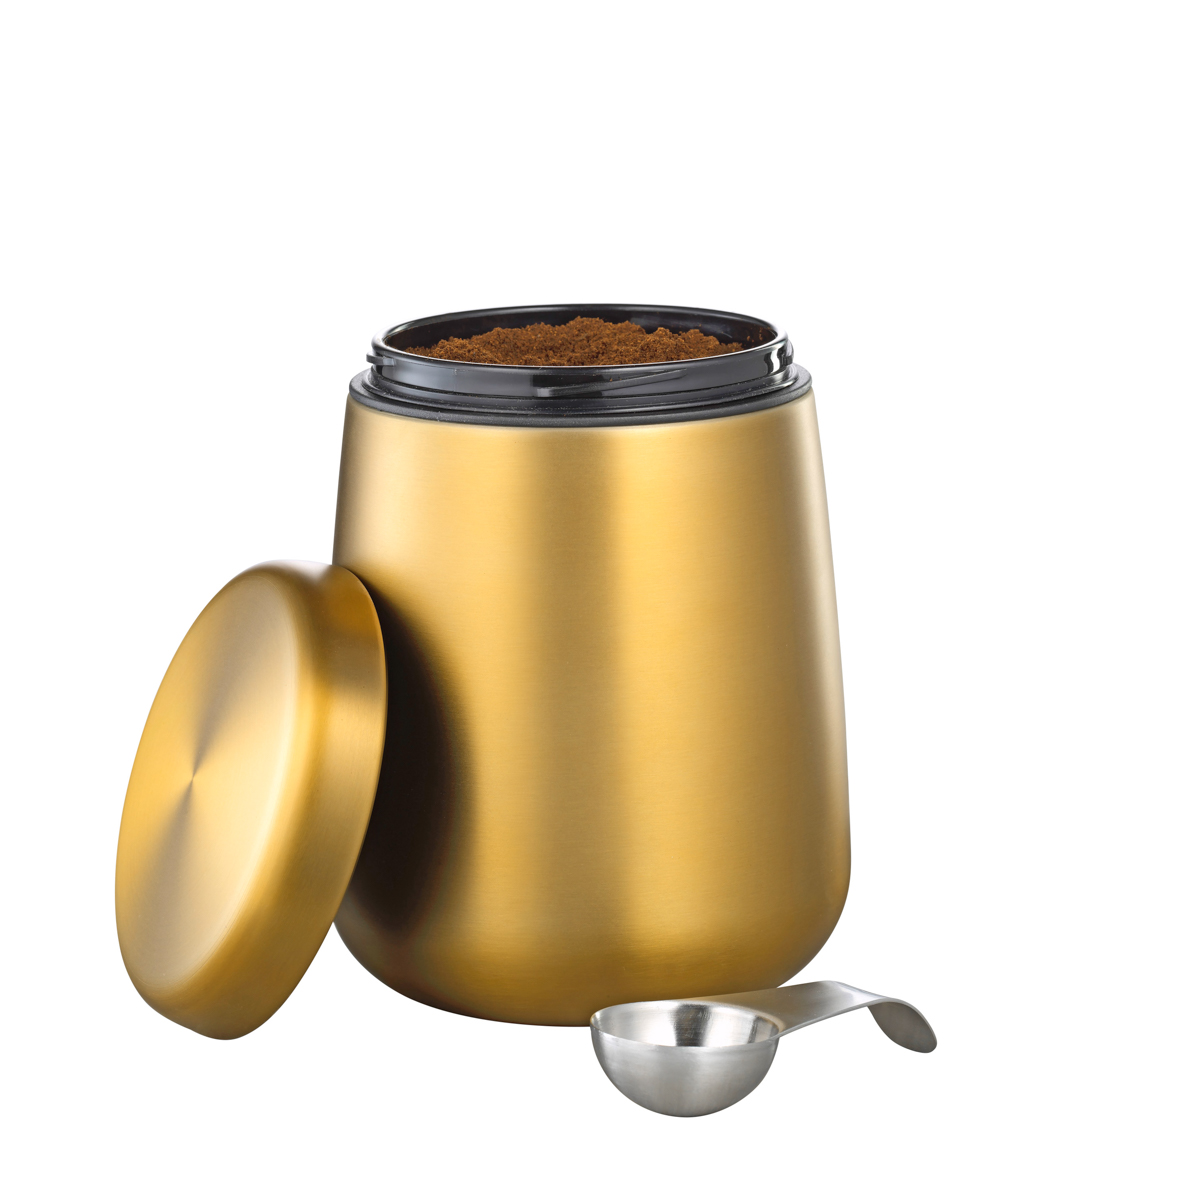 Vorratsdose AVIGNON, aus Edelstahl 18/10, goldfarben lackiert, Maße: Höhe ca. 16,5 cm, Durchmesser ca. 11,5 cm.